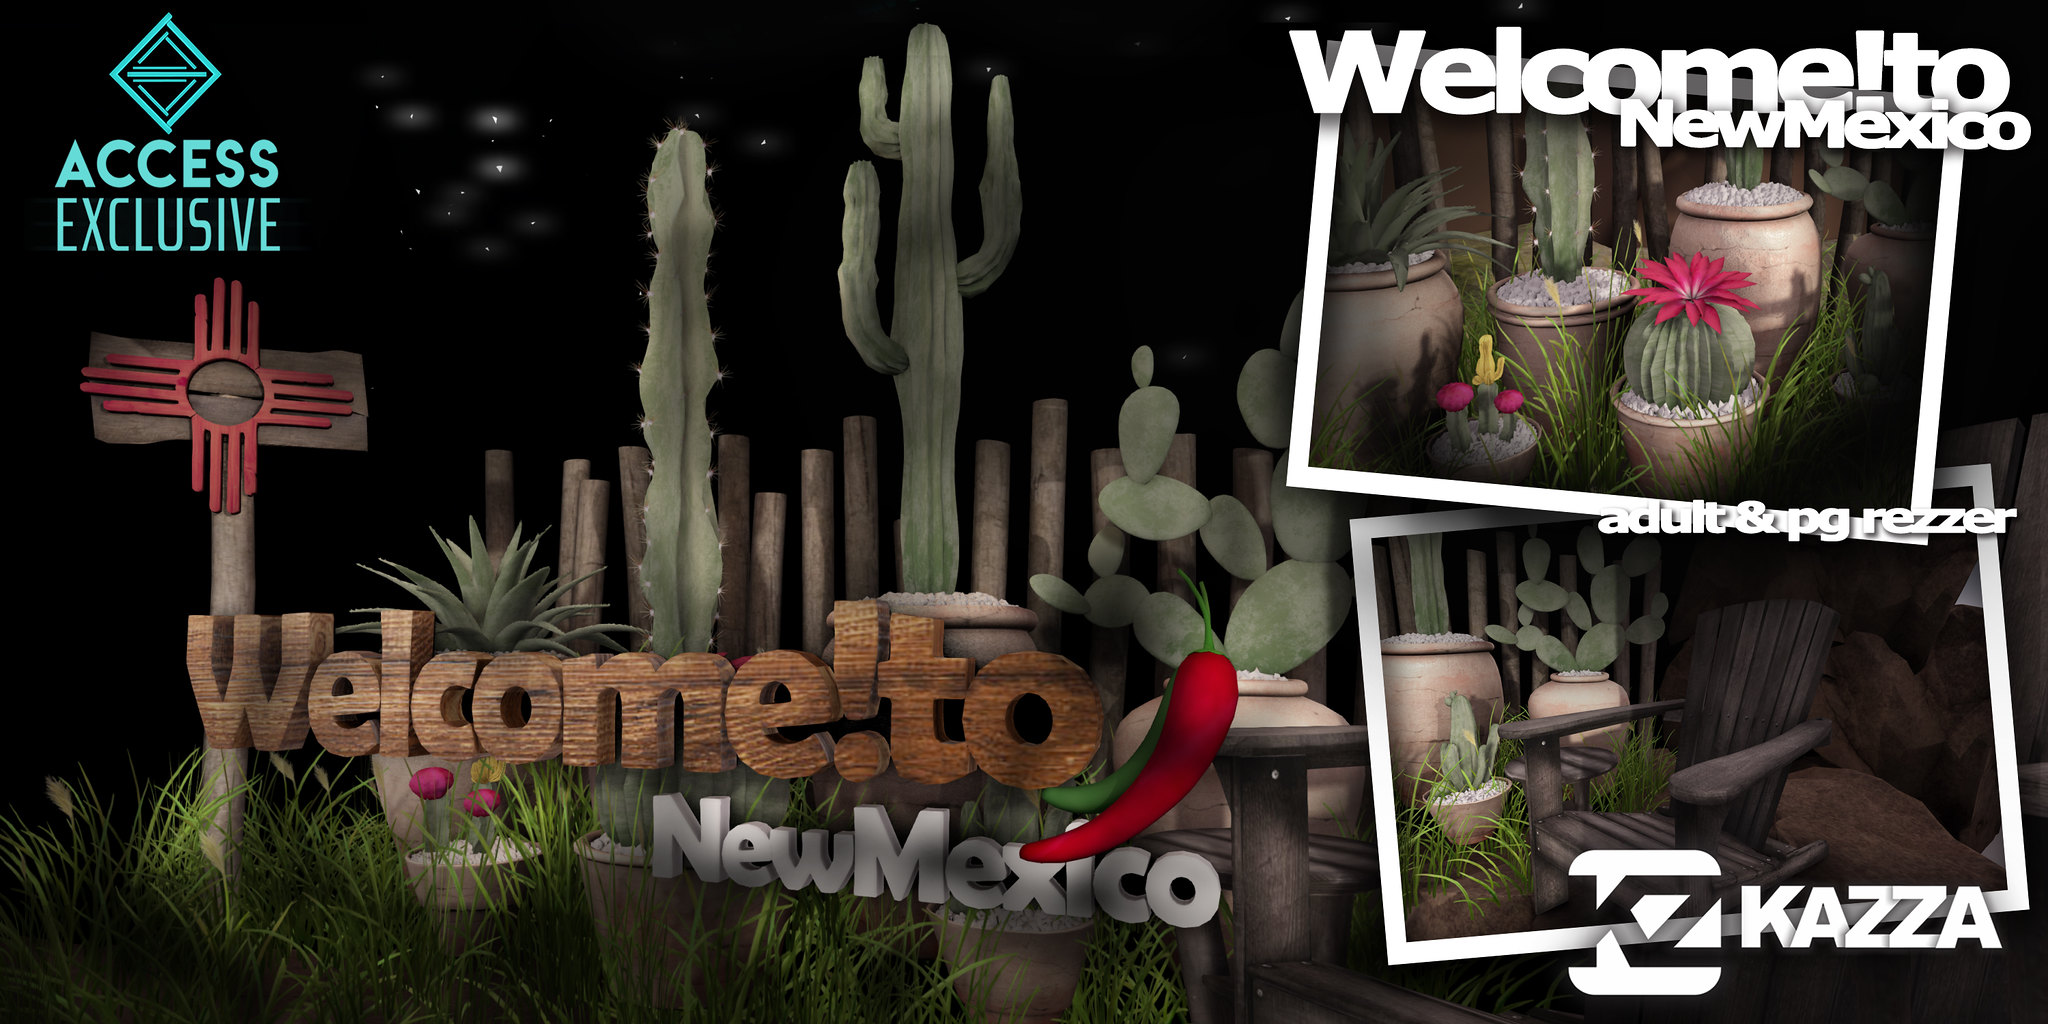 KAZZA – Welcome!toNewMexico